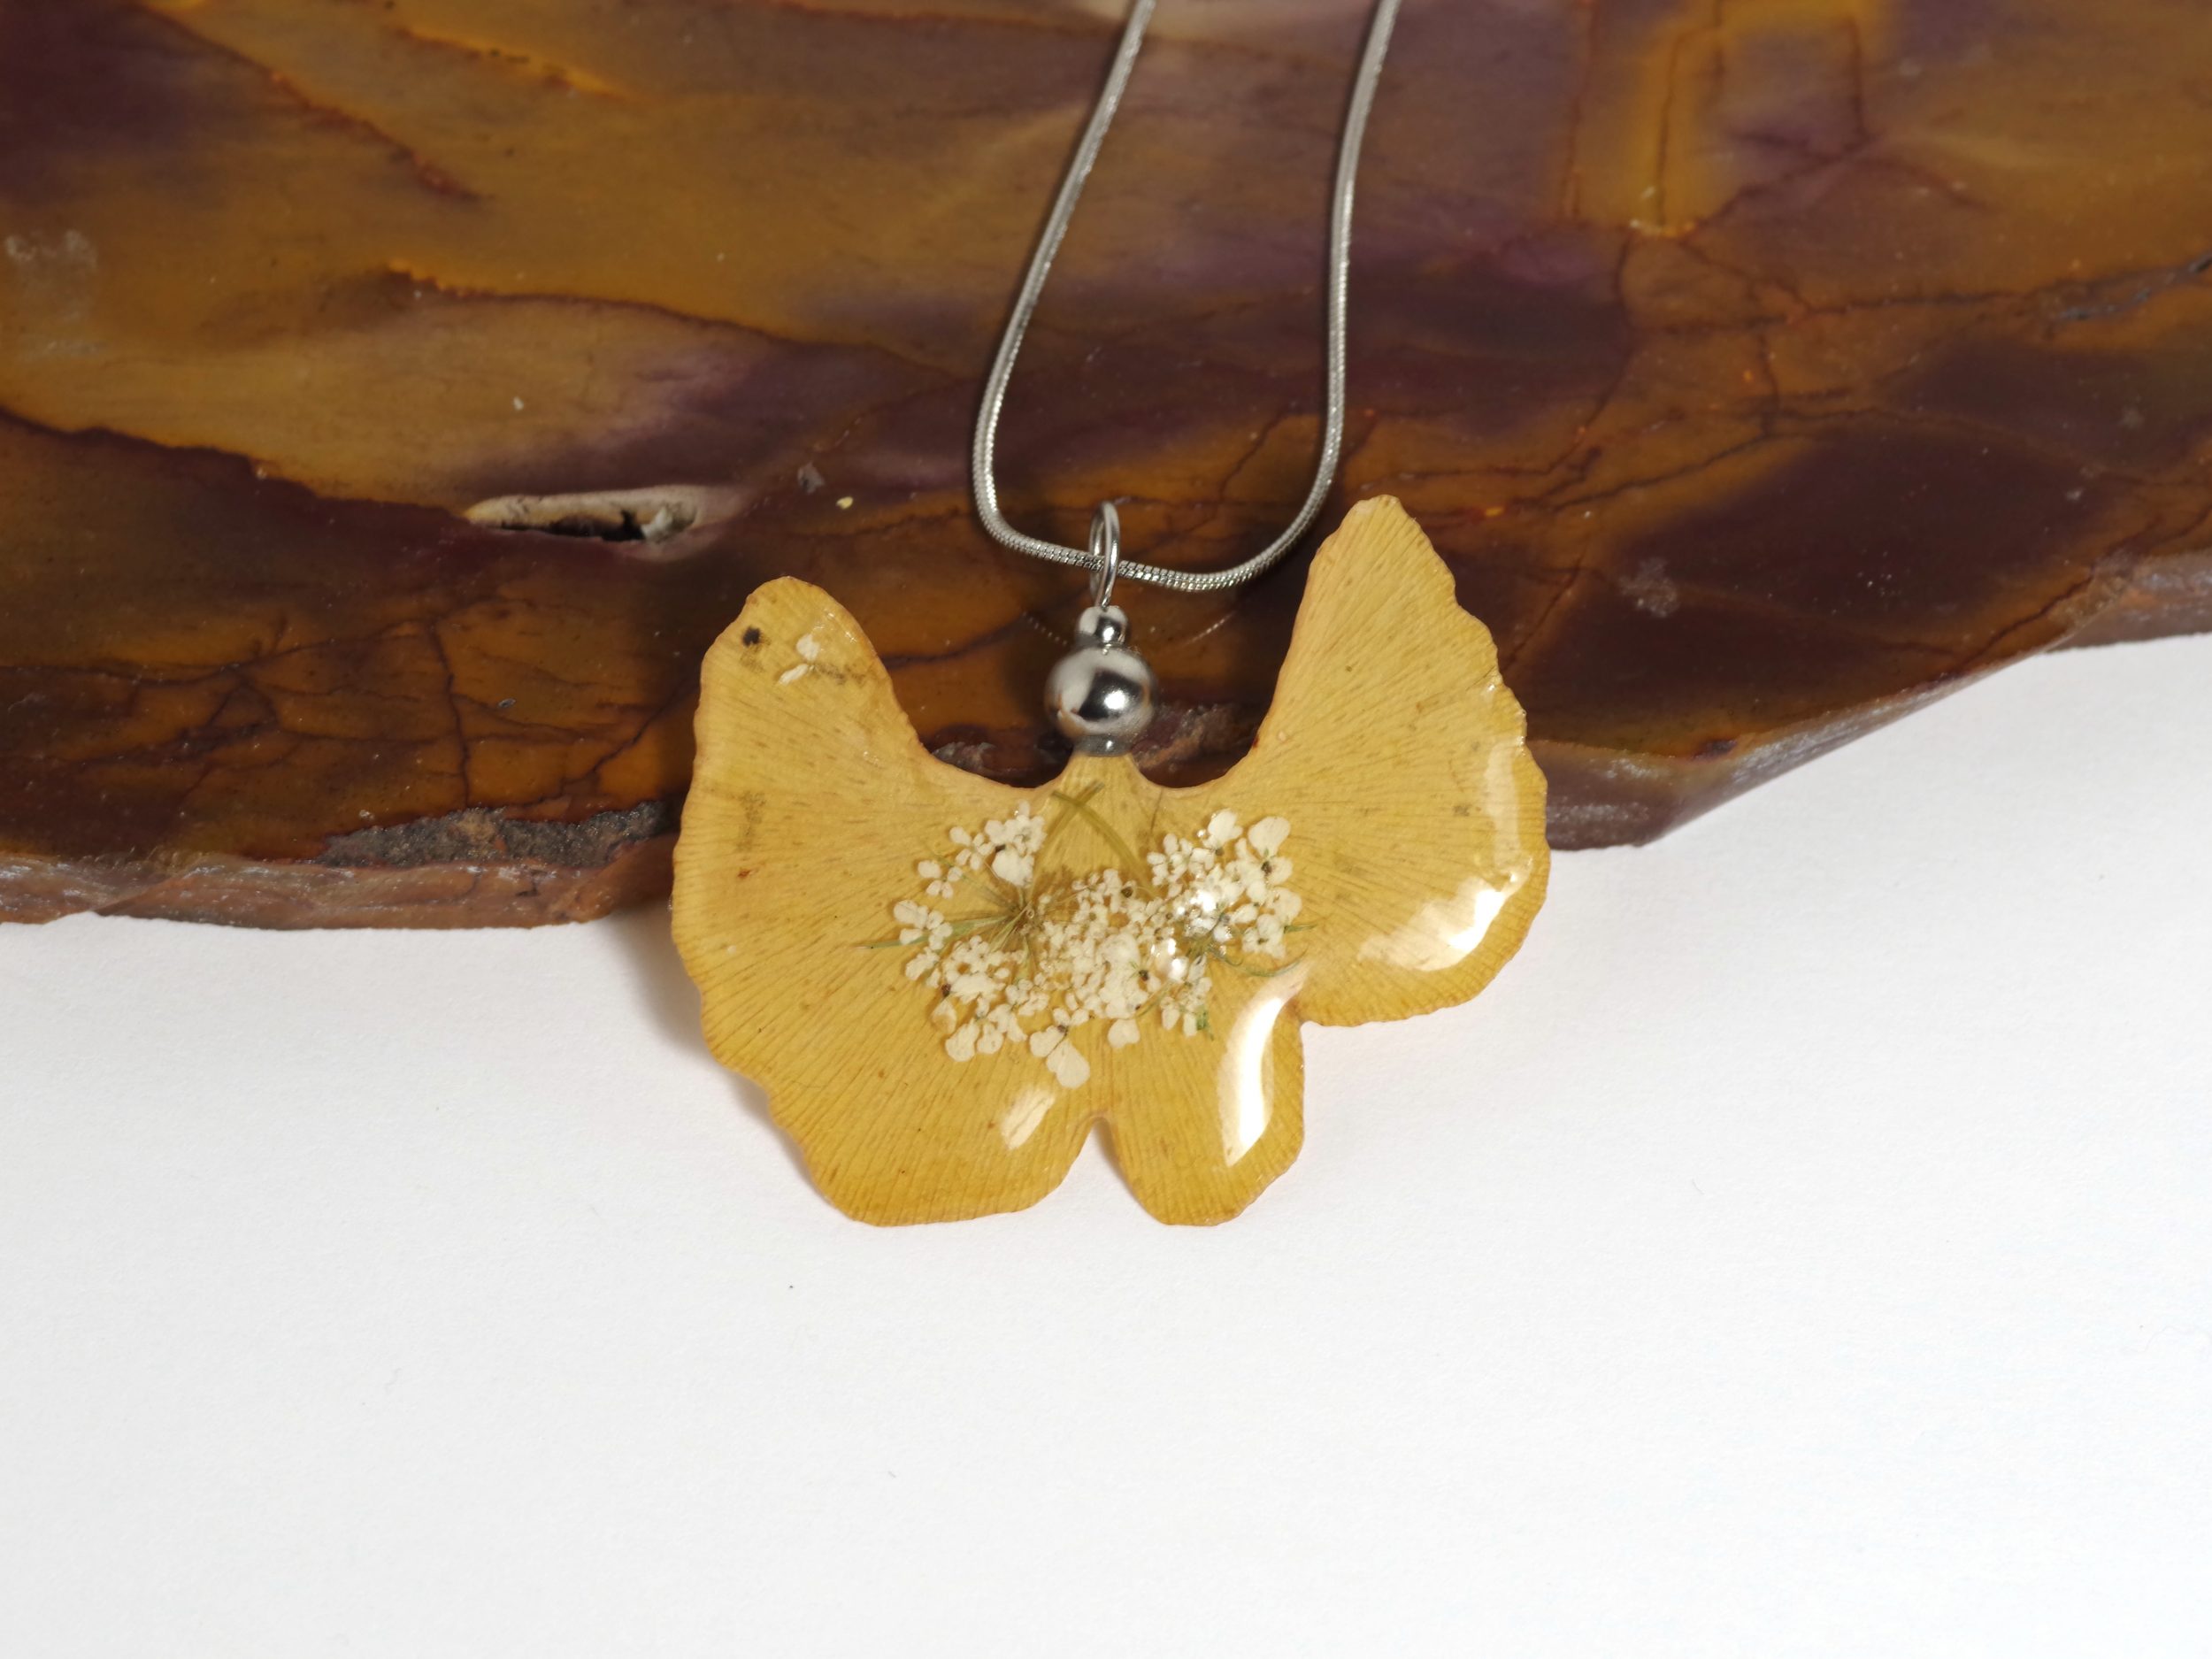 Pendentif lierre cristallisé : Très belle feuille de ginkgo jaune décorée de petites fleurs blanches. Sur une fine chaîne d'inox. Collier naturel et féminin.